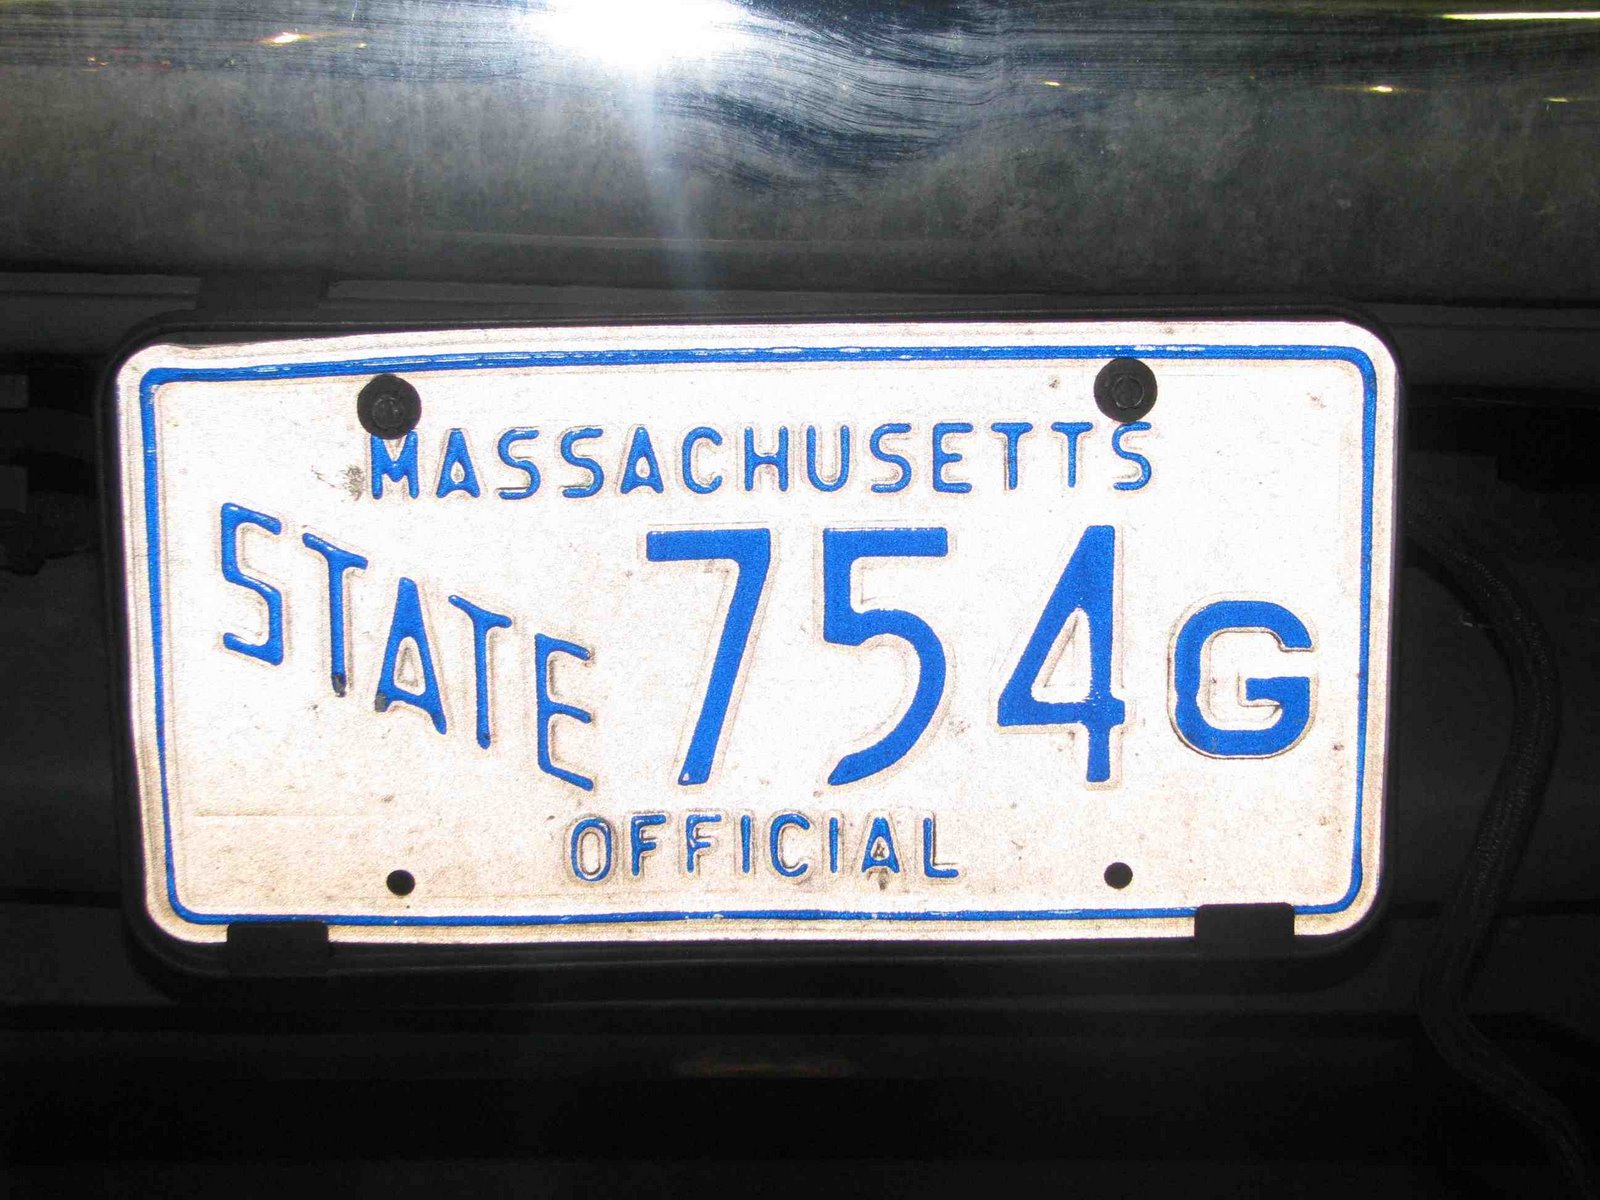 [Massachusetts+state+official.jpg]